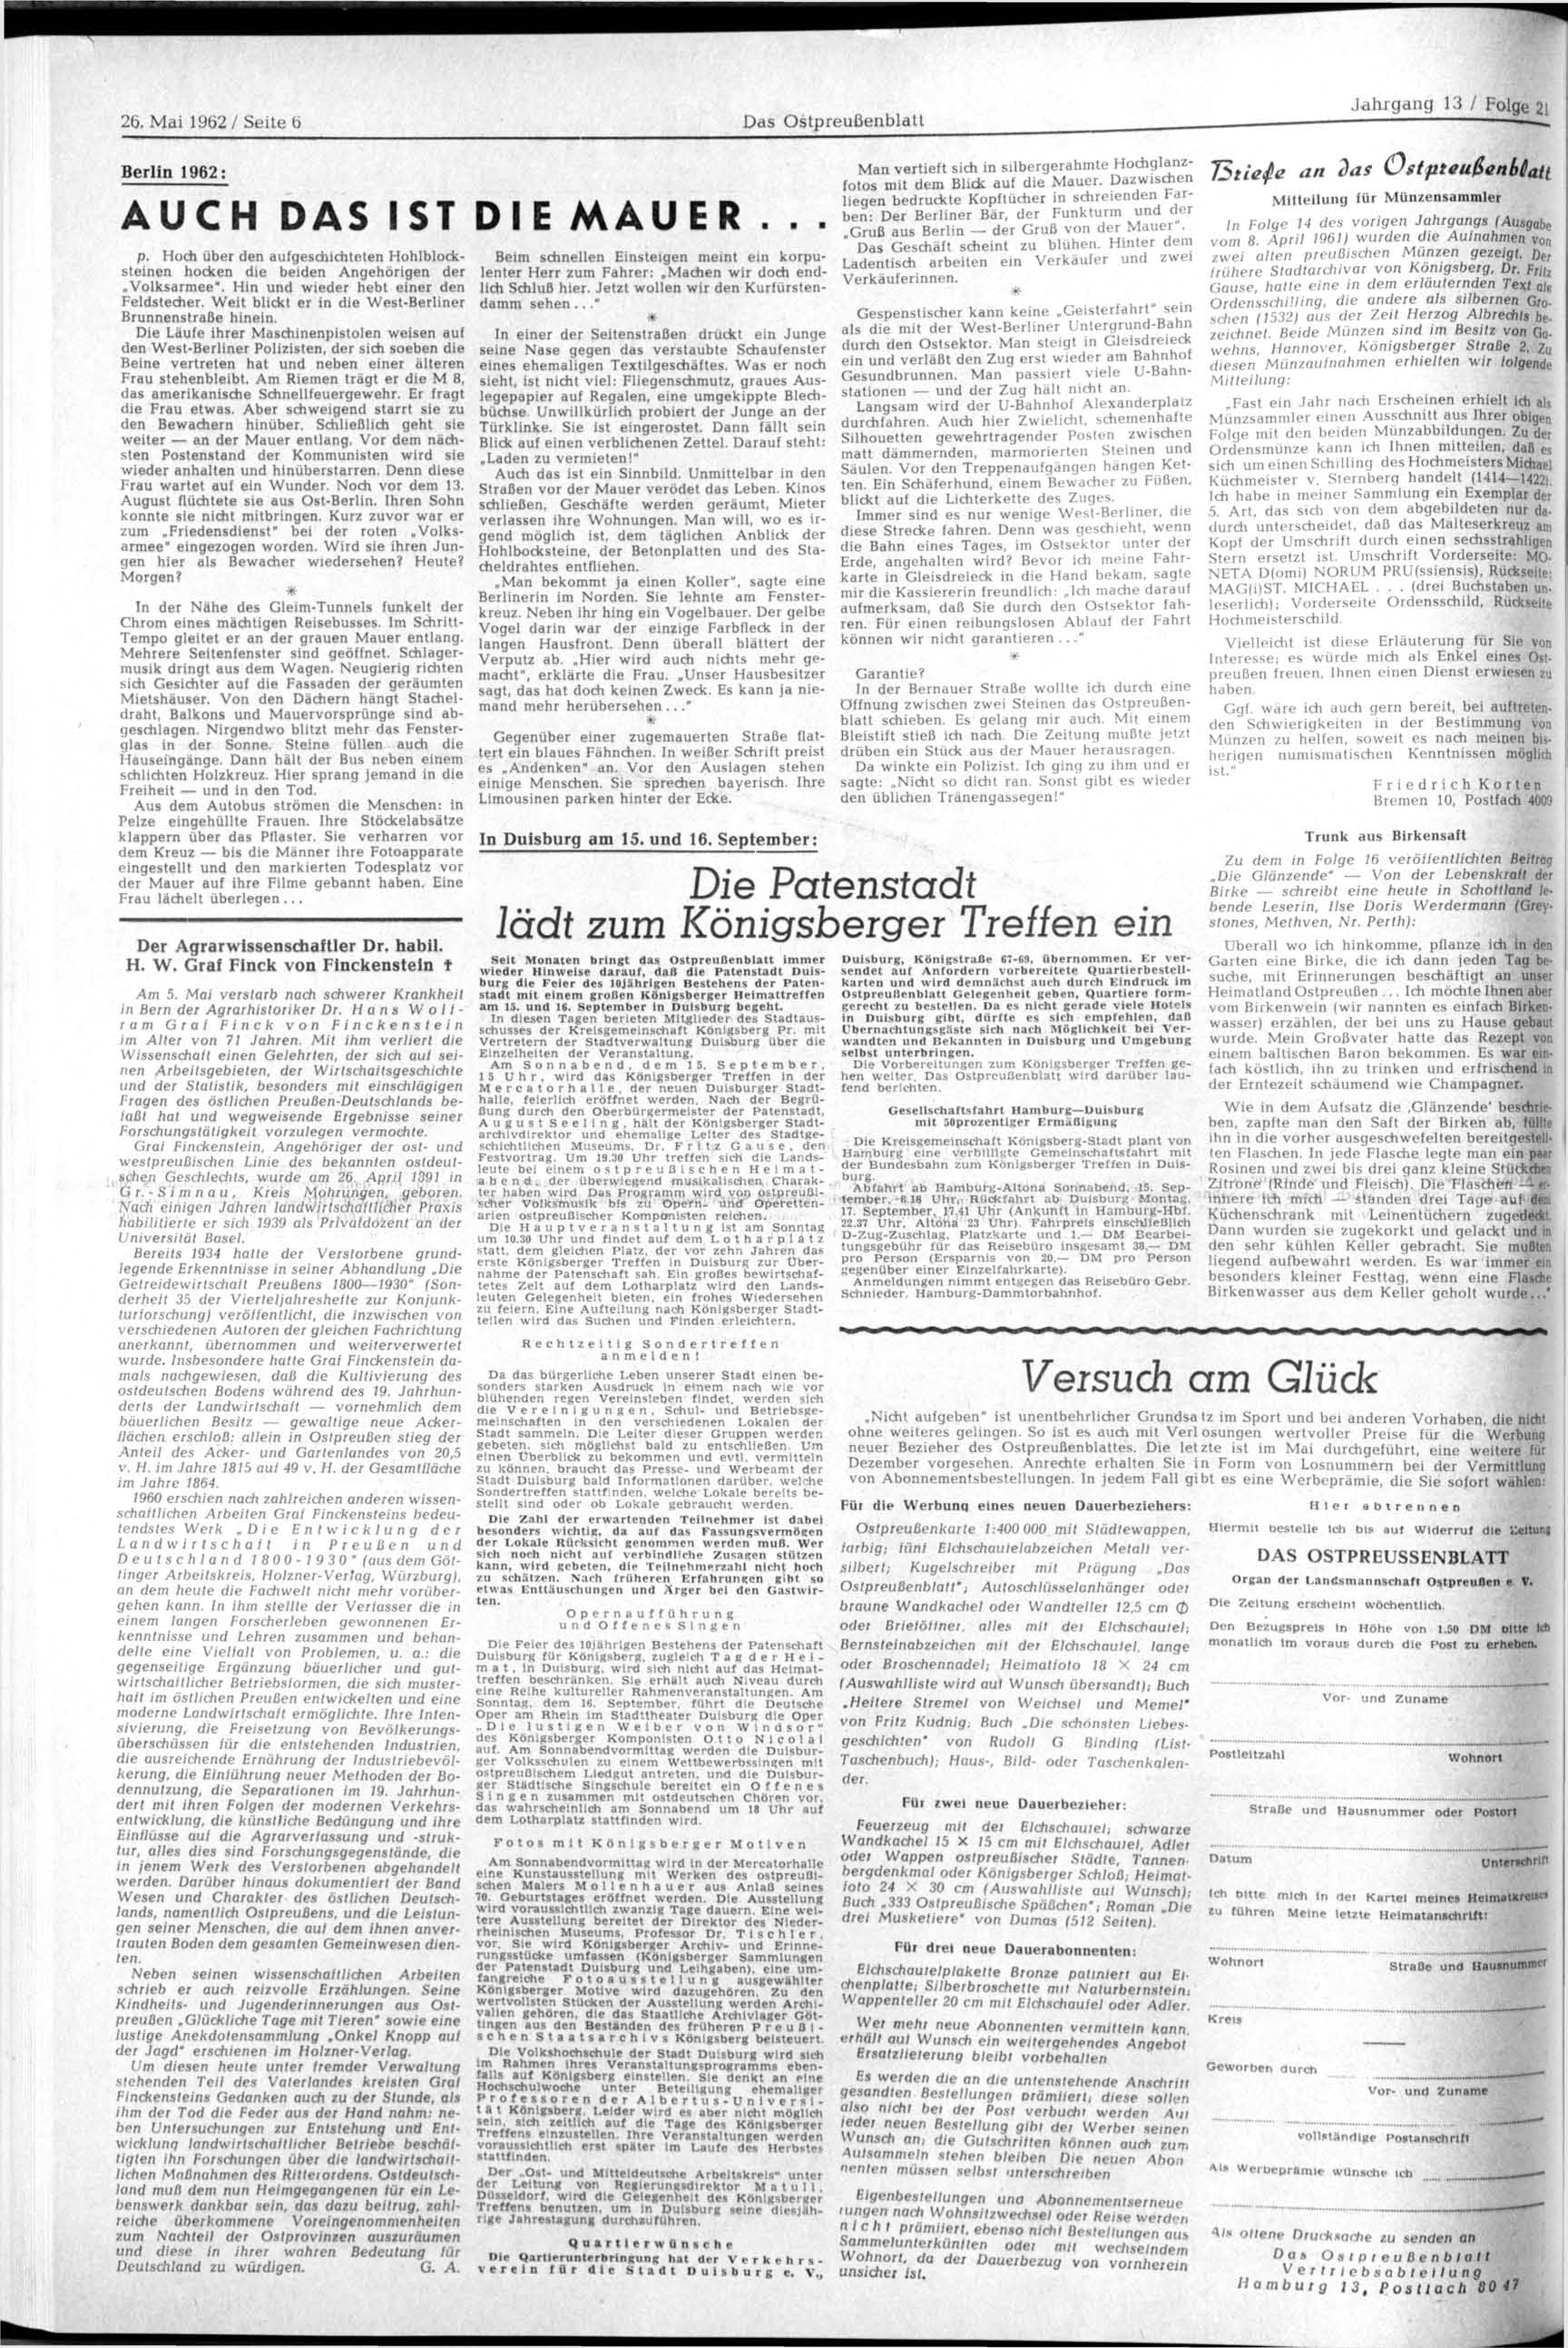 26. Mai 1962/ Seite 6 Das blatt Jahrgang 13 / Folge 2i Berlin 1962: AUCH DAS IST DIE MAUER... p. Hoch über den aufgeschichteten Hohlblocksteinen hocken die beiden Angehörigen der Volksarmee".